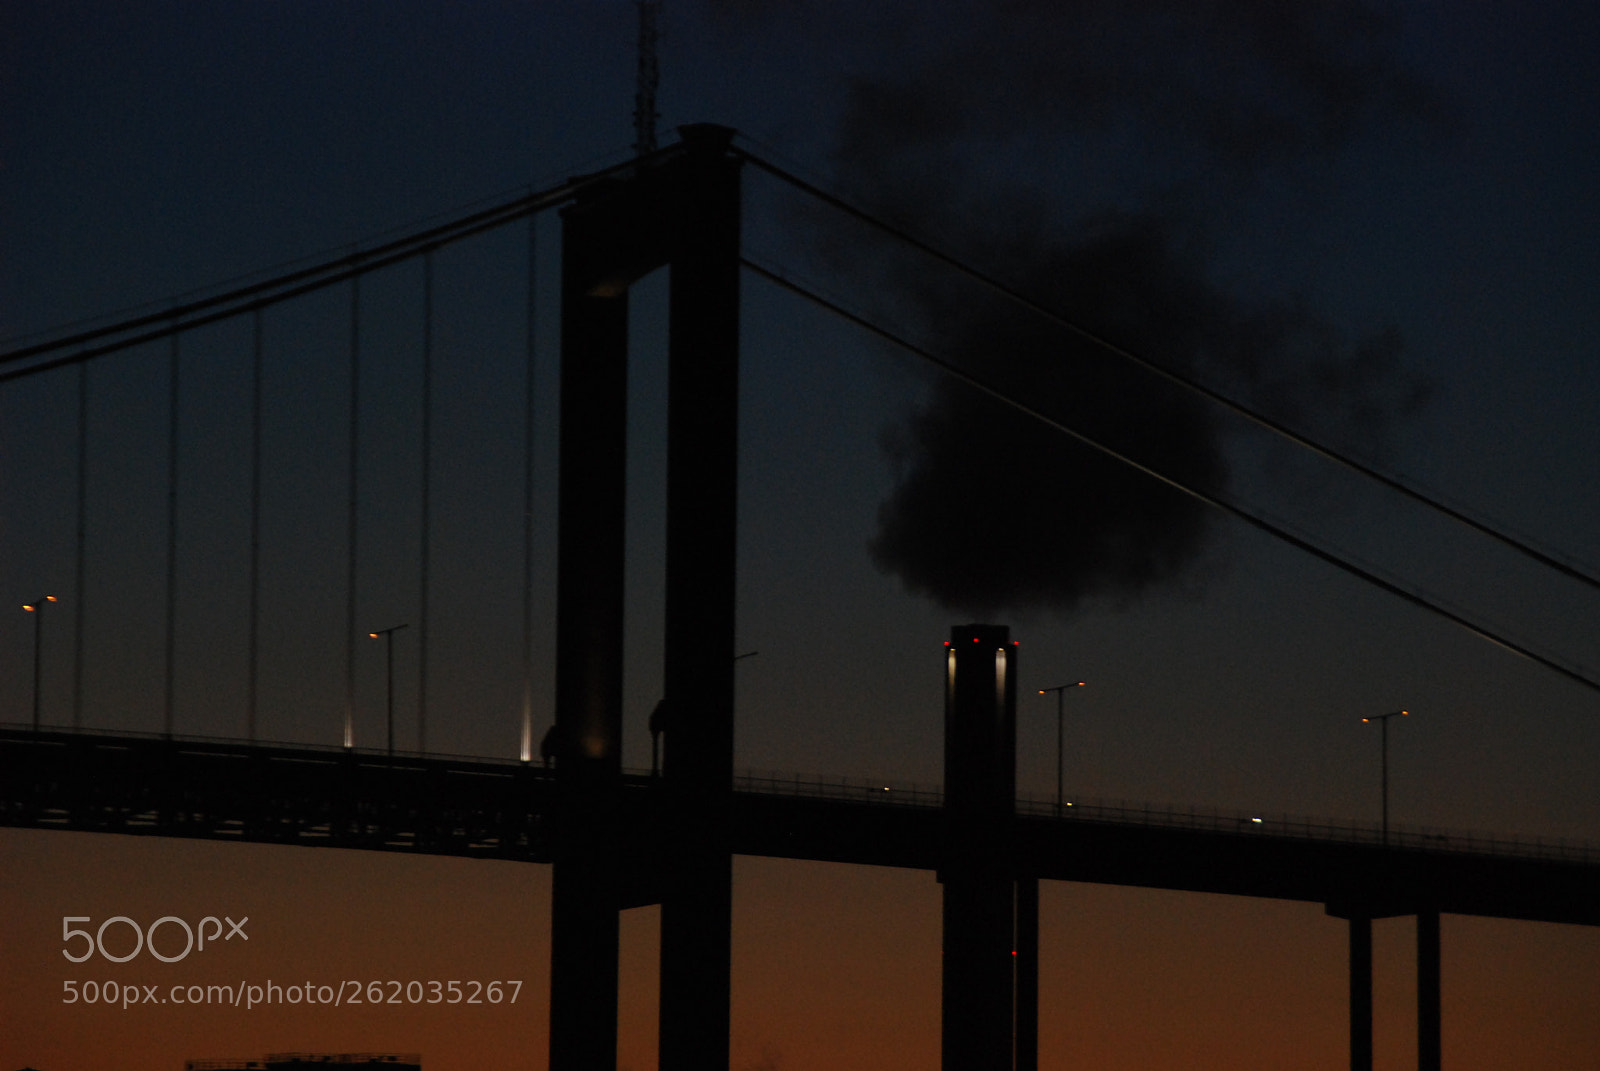 Nikon D80 sample photo. Sunset bridge and smoking photography